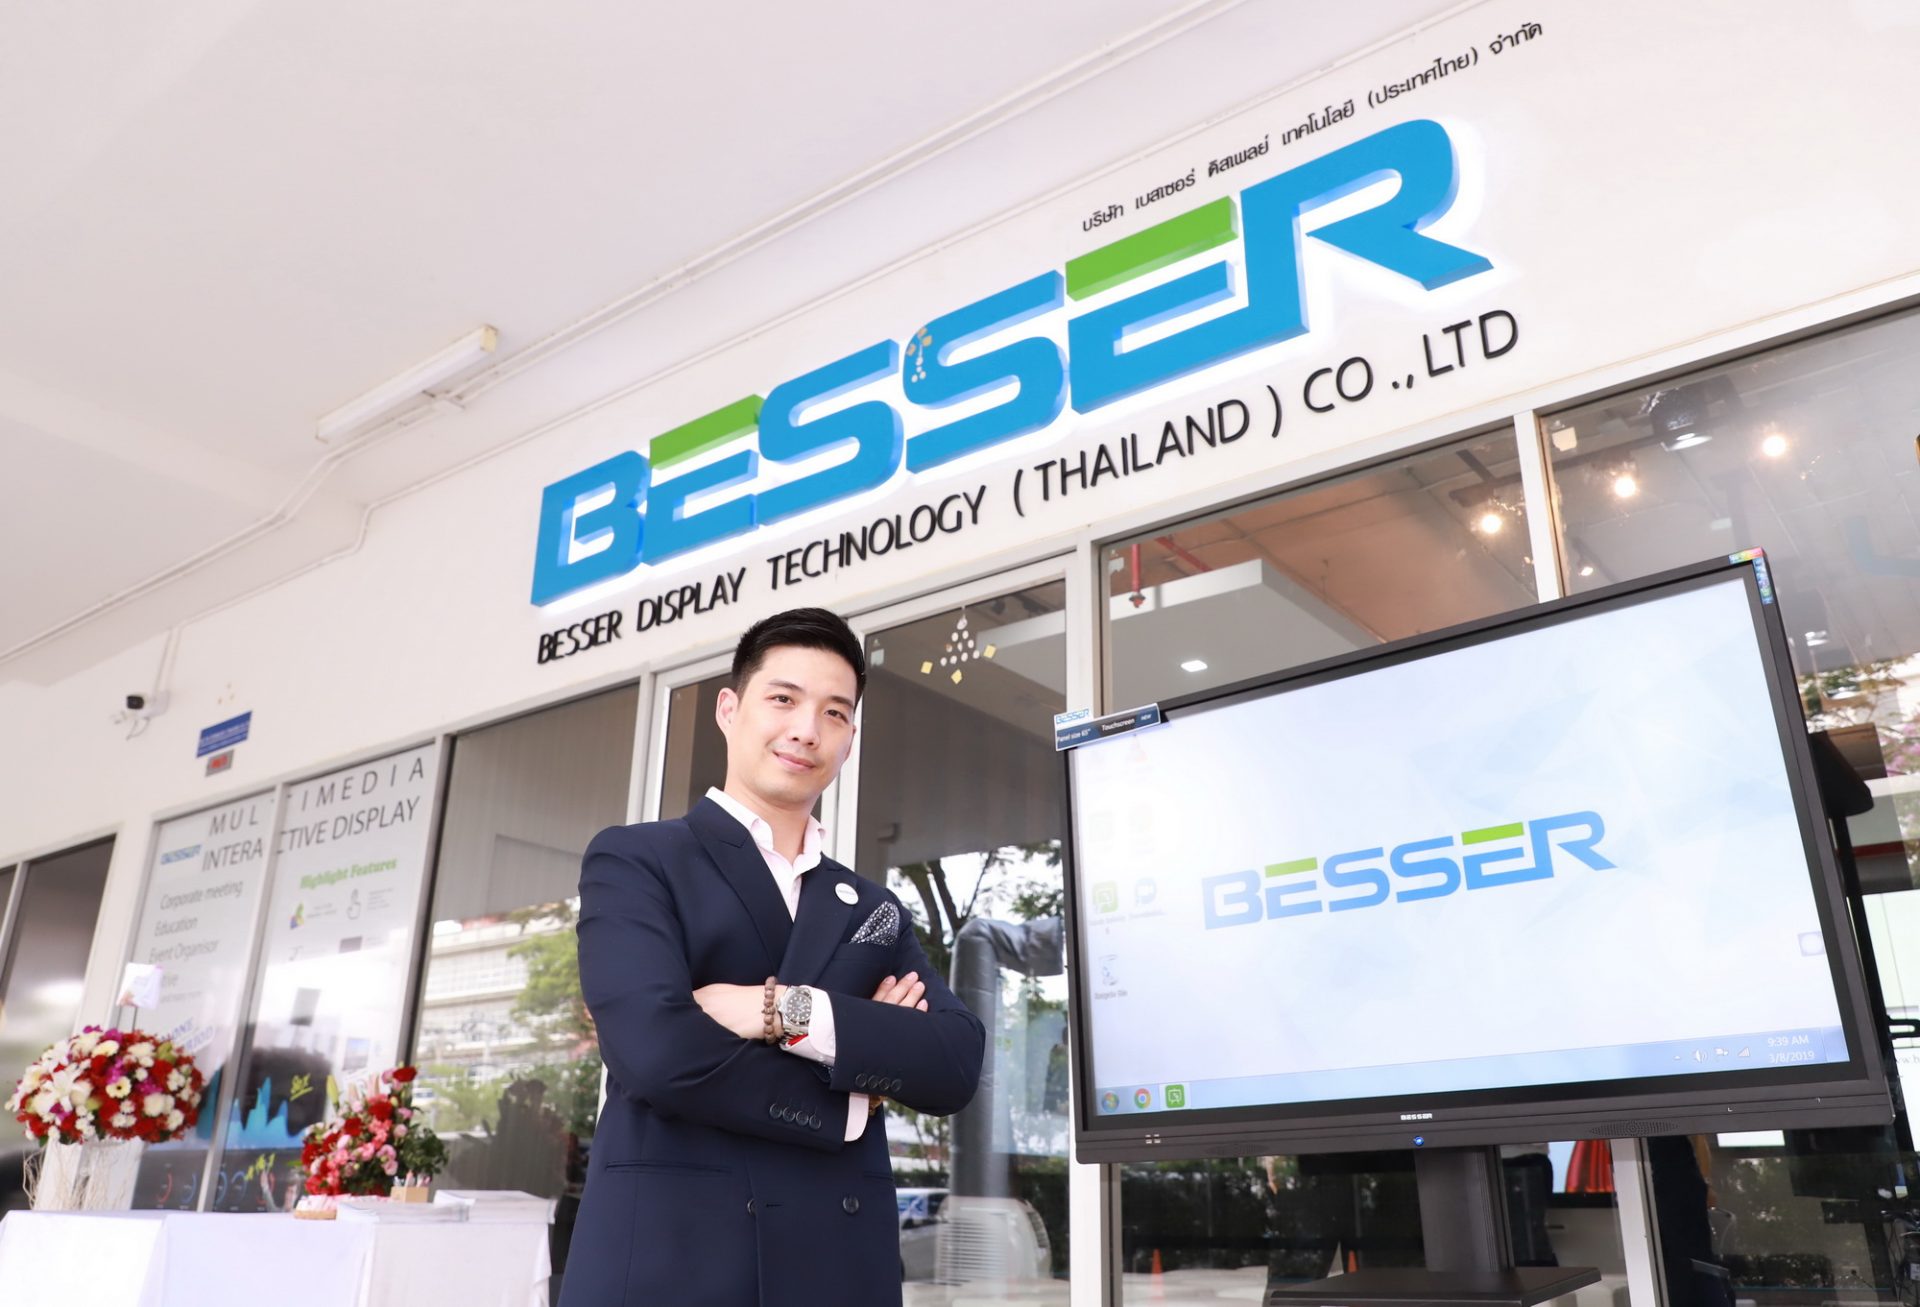 “เบสเซอร์” ดันจอดิสเพลย์ อินเตอร์แอคทีฟ อัจฉริยะ ขยายธุรกิจสู่ไทย พร้อมตั้งฐานรุกตลาดอาเซียน